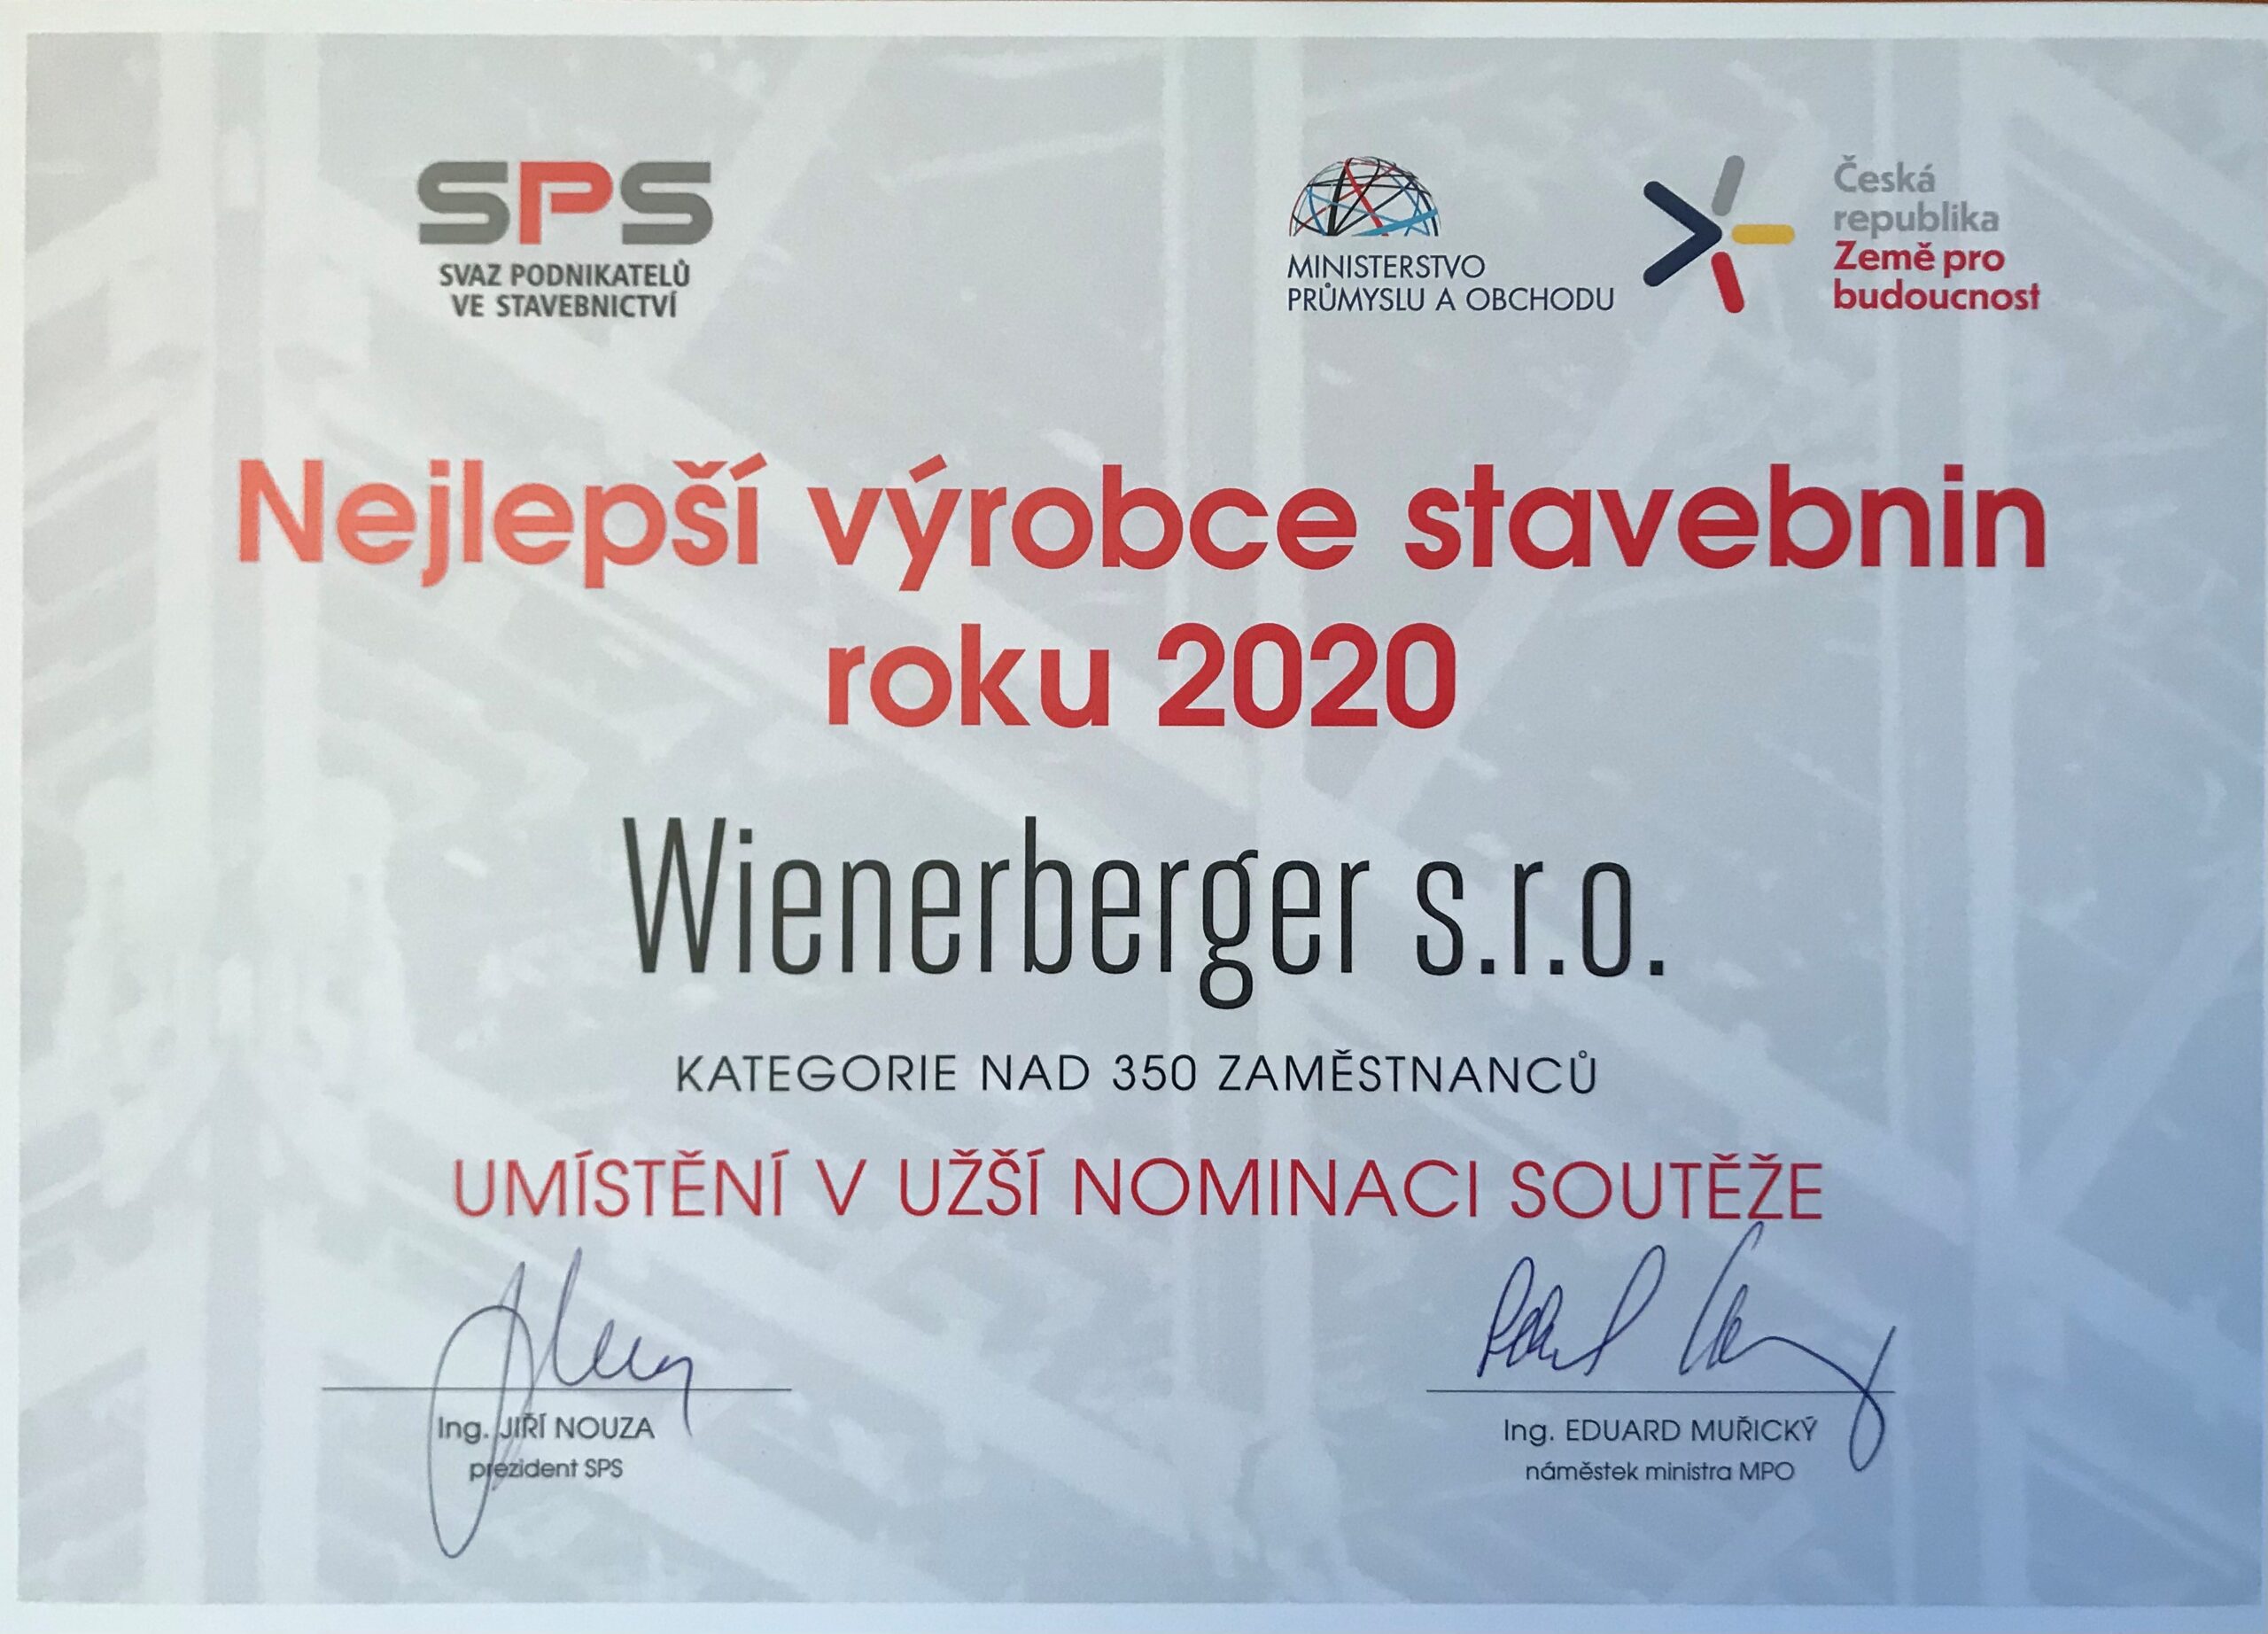 Wienerberger opět uspěl v soutěži Nejlepší výrobce stavebnin roku